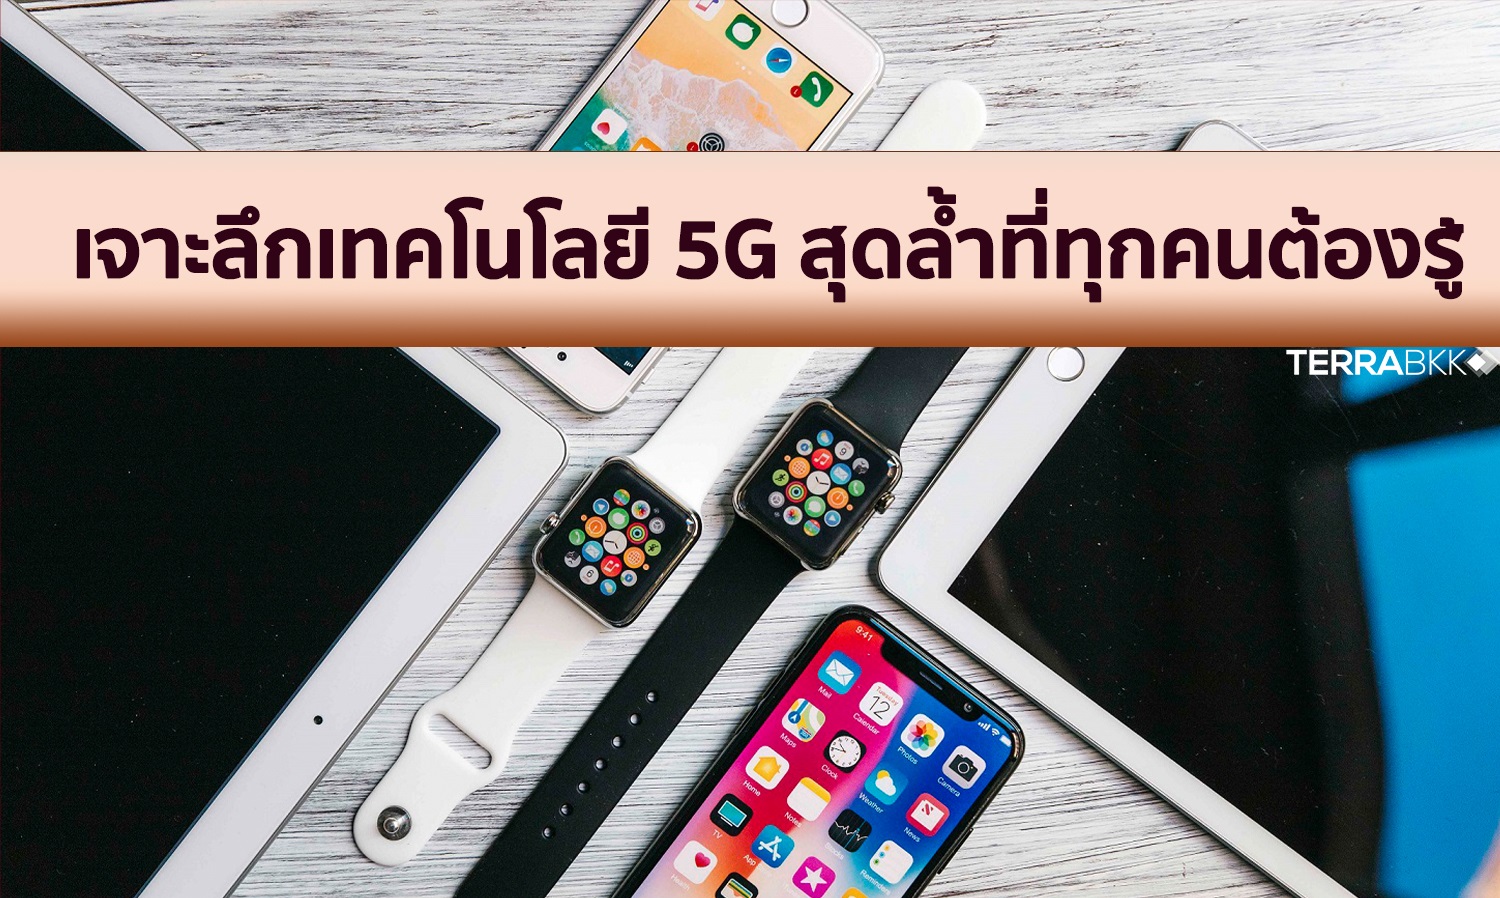 รู้หรือไม่ !!! กว่าที่ไทยจะเข้าถึงเทคโนโลยี 5G ต้องใช้เวลากว่า 34 ปี ทรานส์ฟอร์มมาถึง 5 Gen 